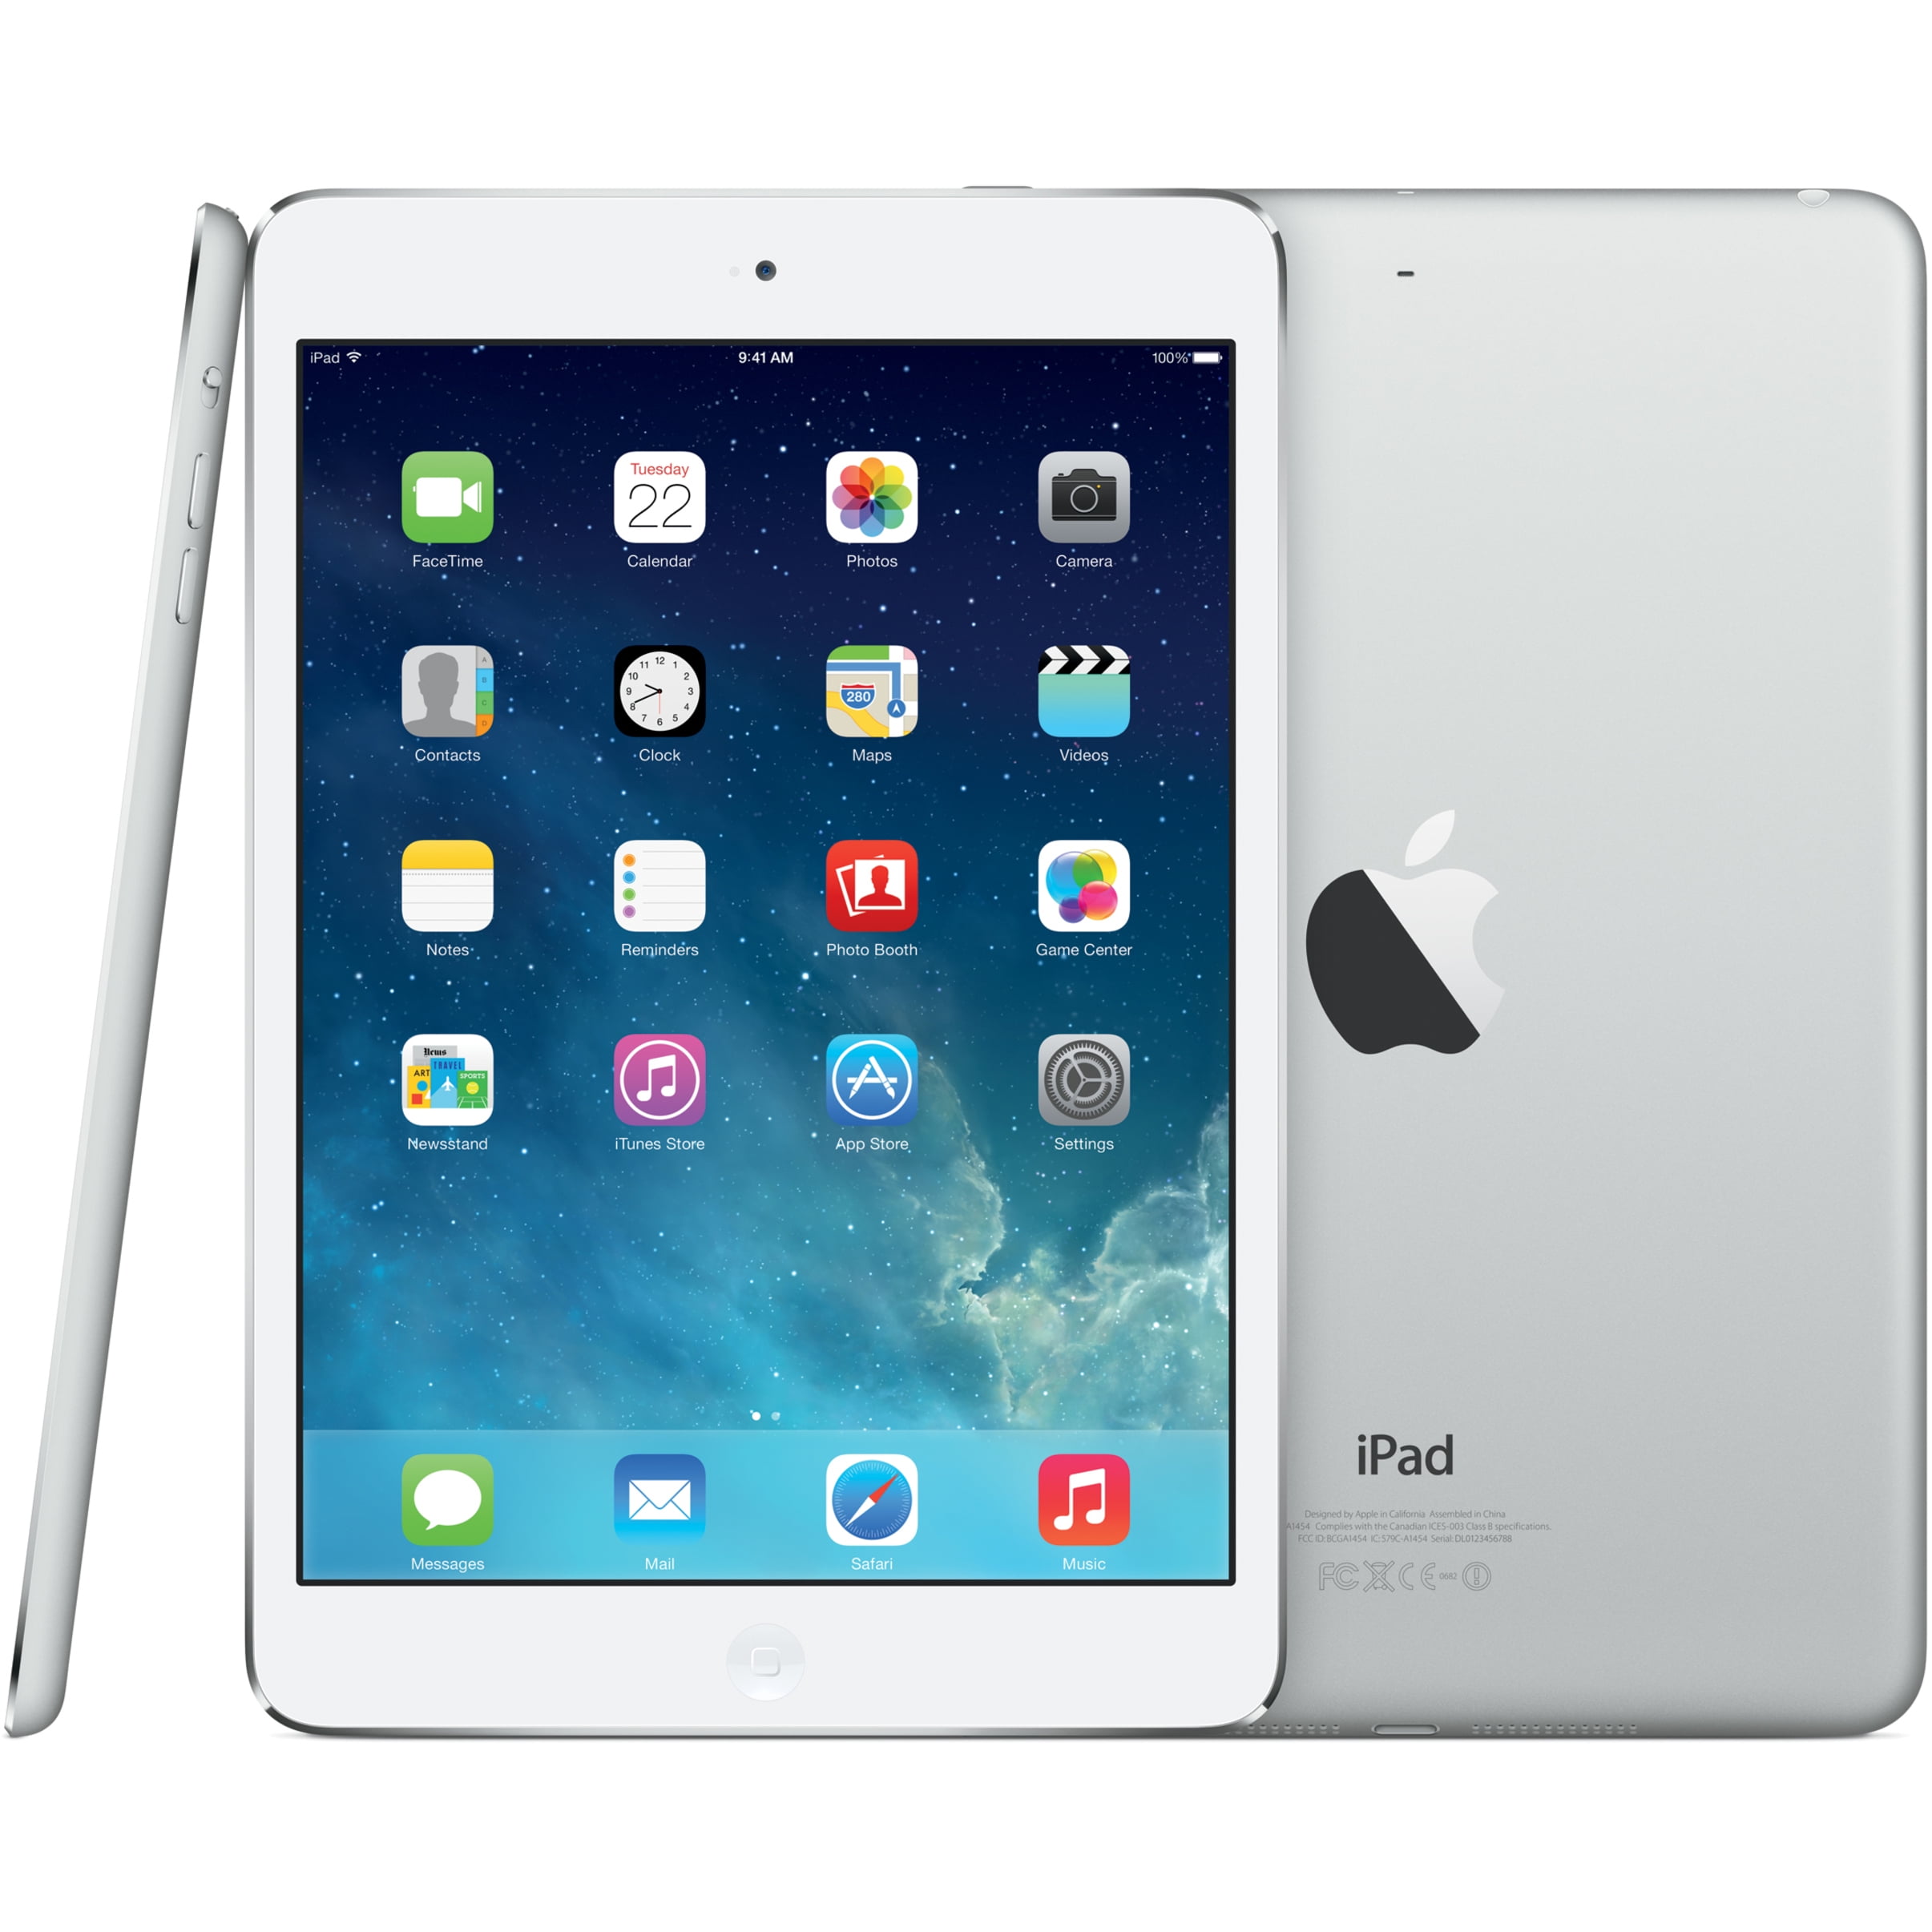 R Apple iPad mini 2 16GB Silver with Retina Display Wi-Fi 7.9in Grade A 